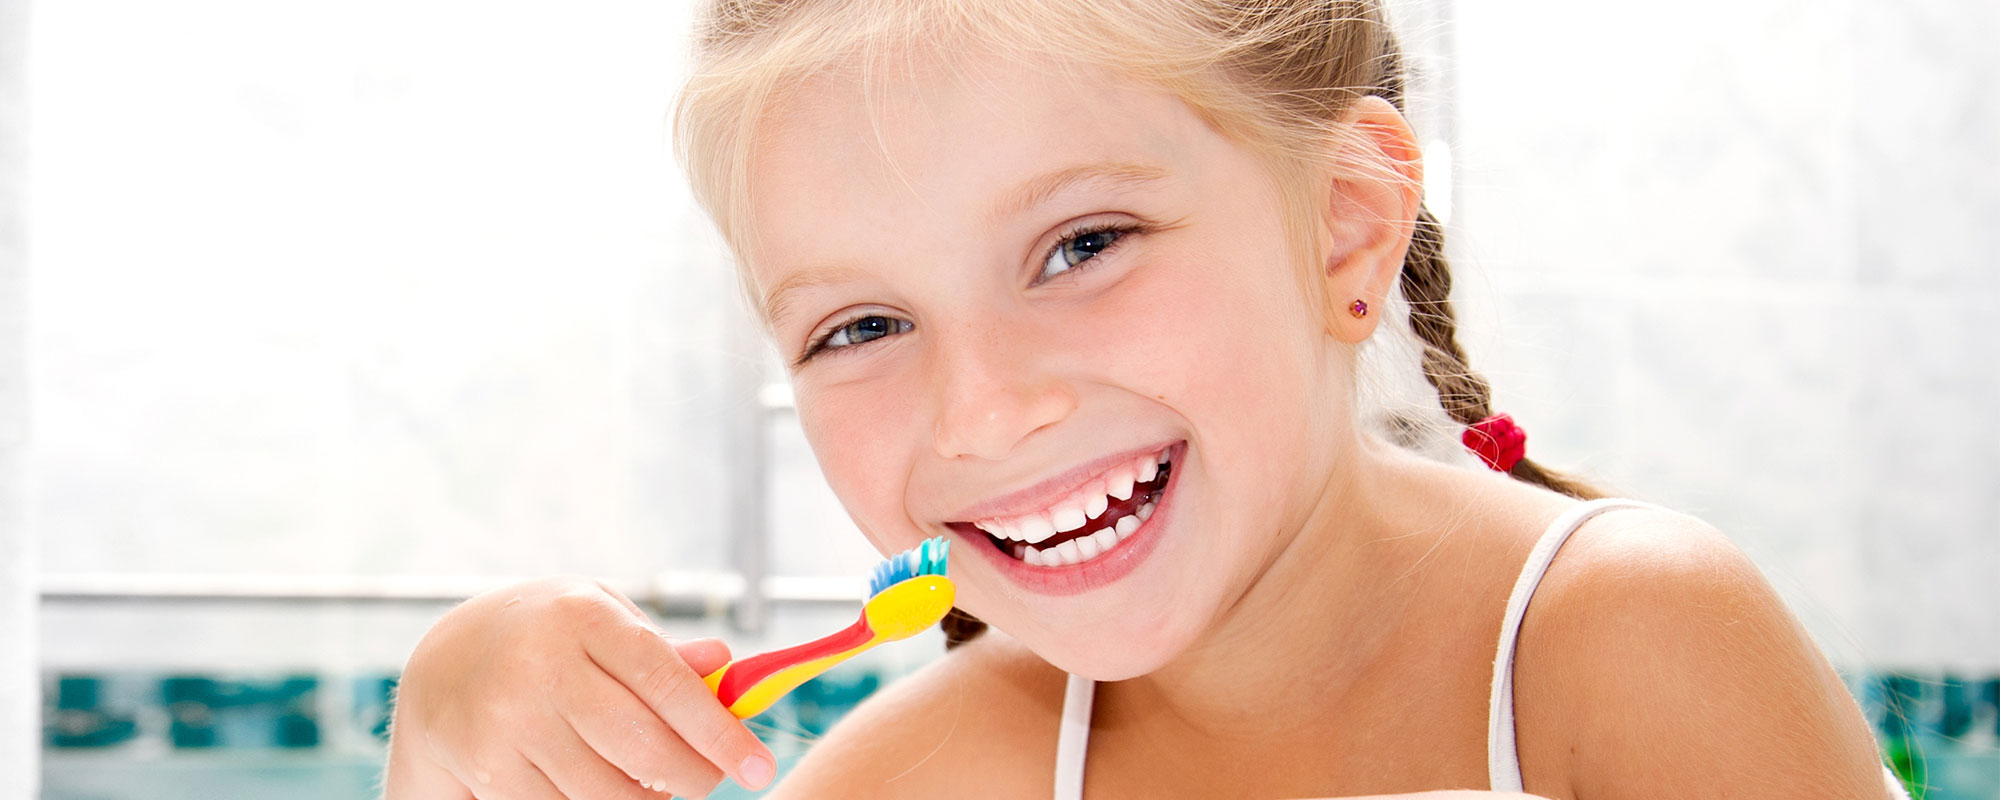 Slogan pulizia denti per bambini - Igiene dentale